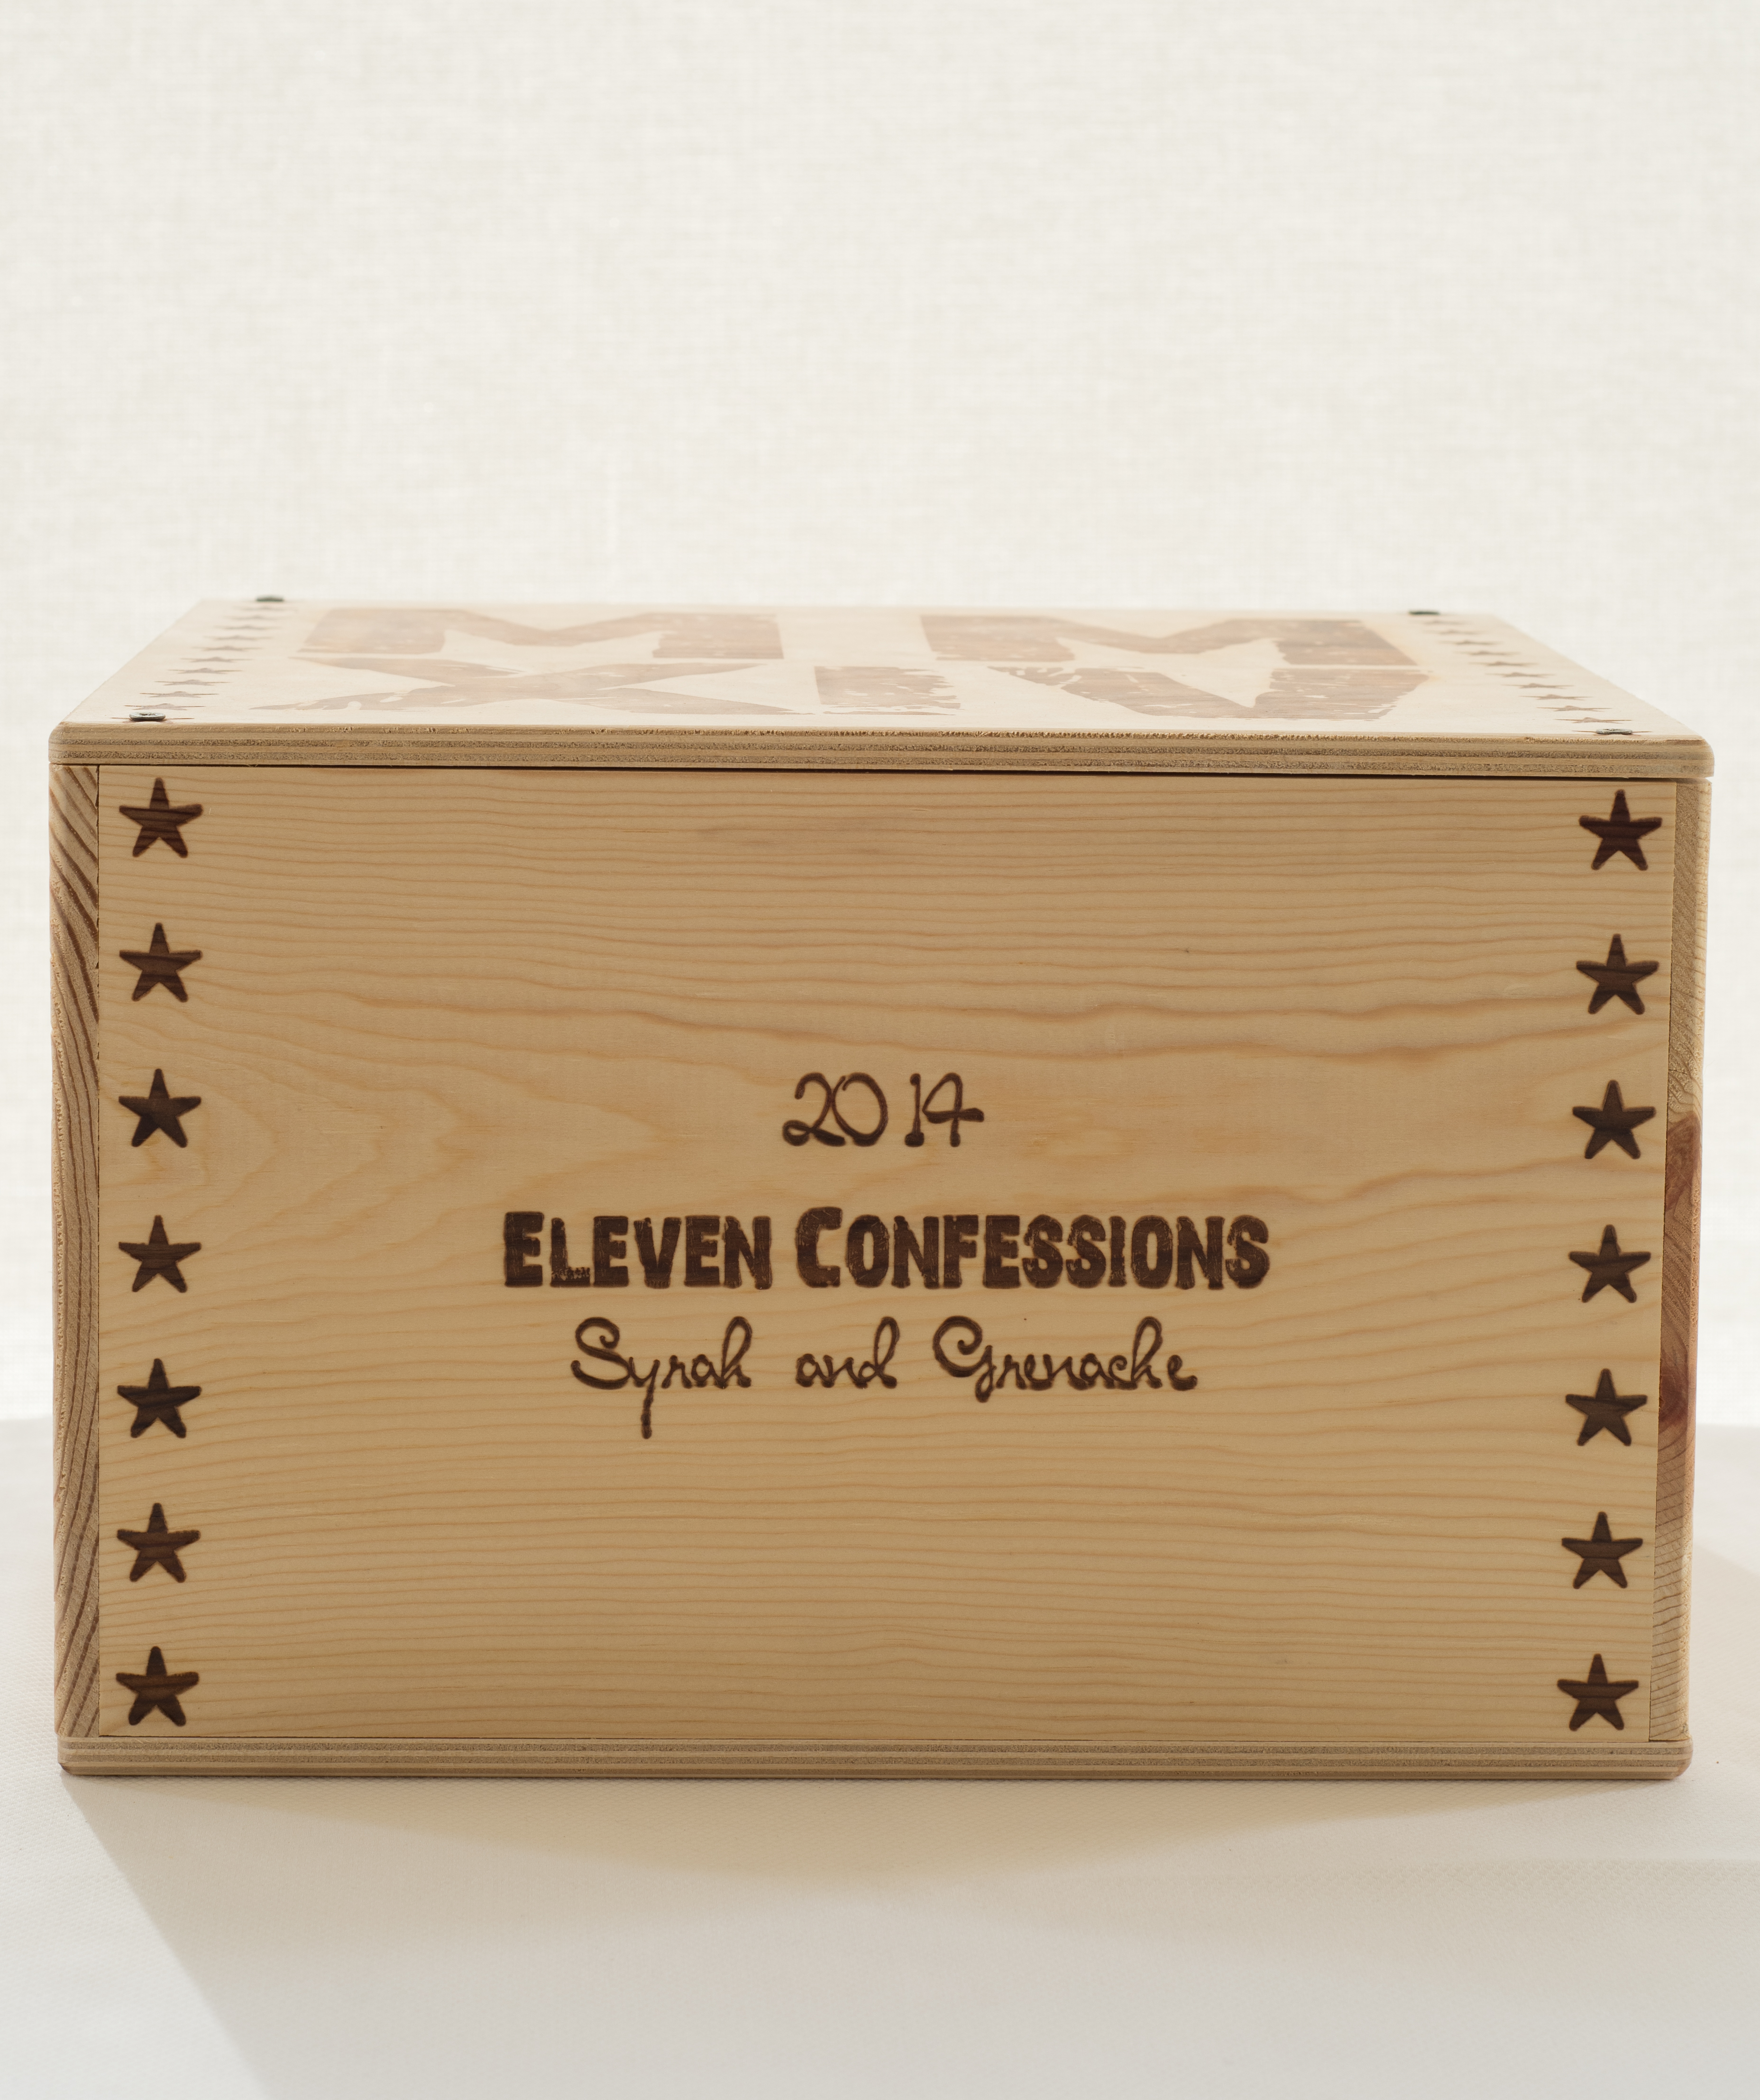 2014 Sine Qua Non Eleven Confessions [OWC:06].jpg